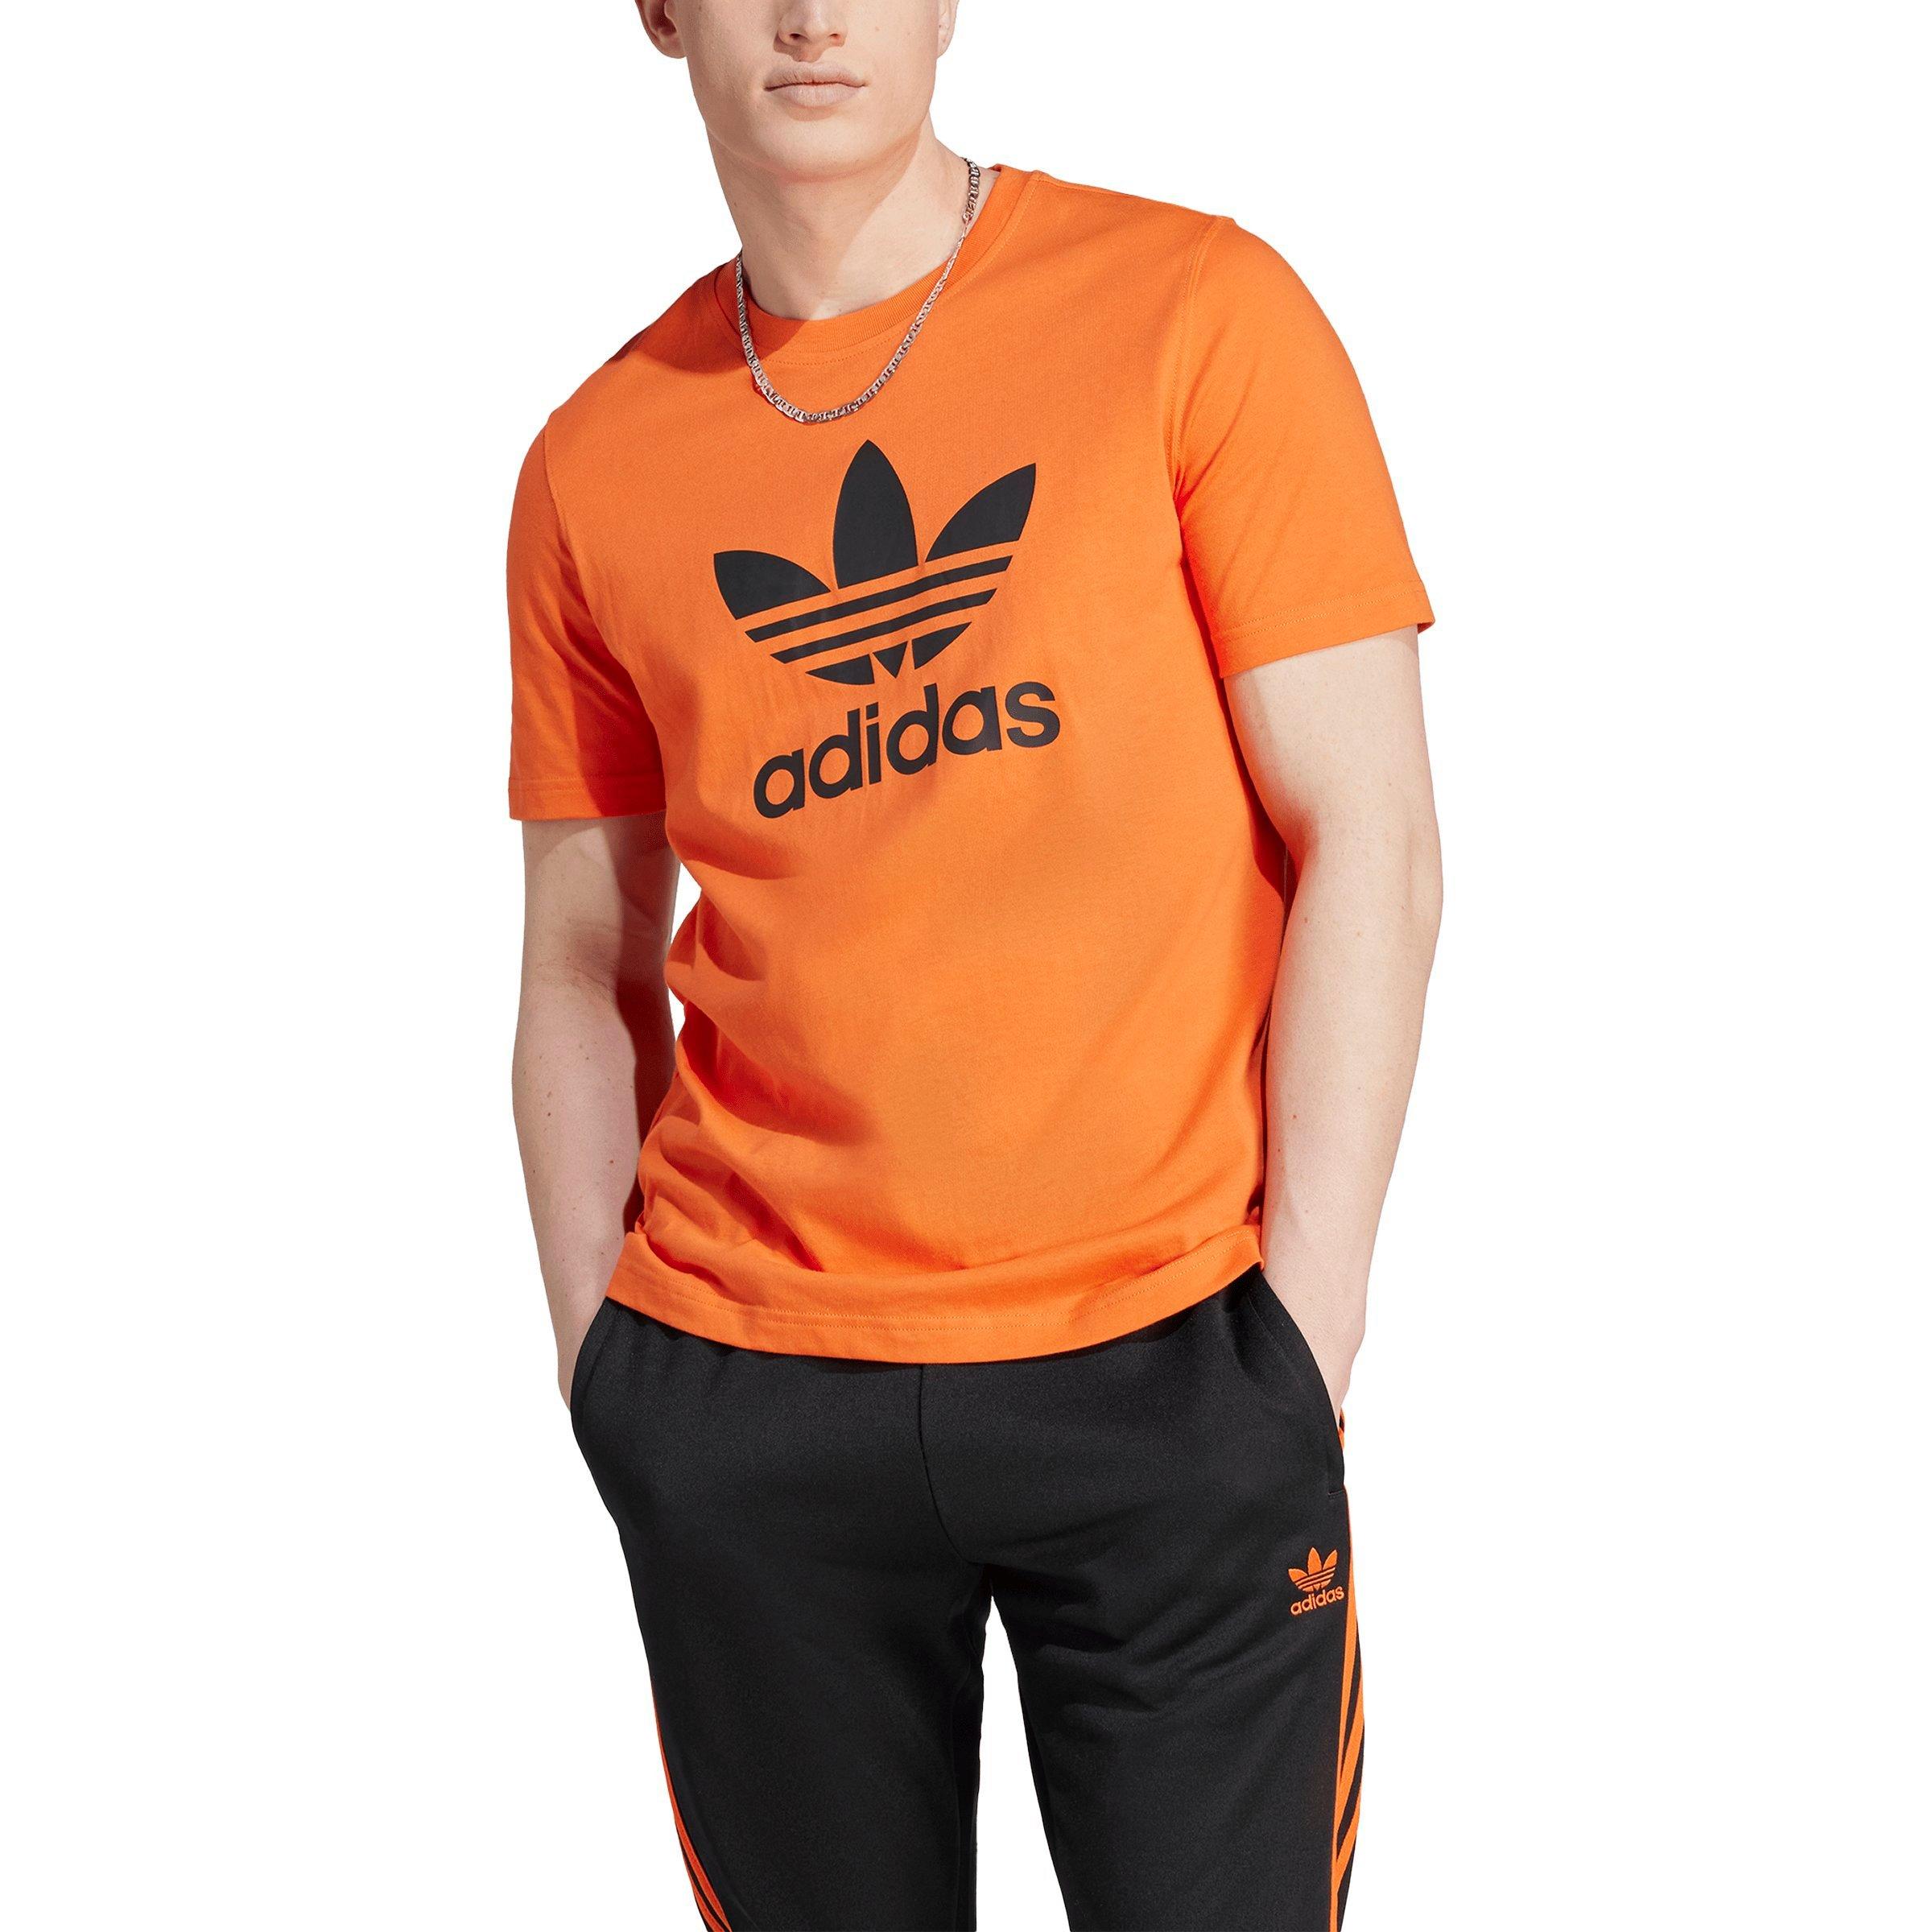 Adidas Men's Shirt - Orange - S